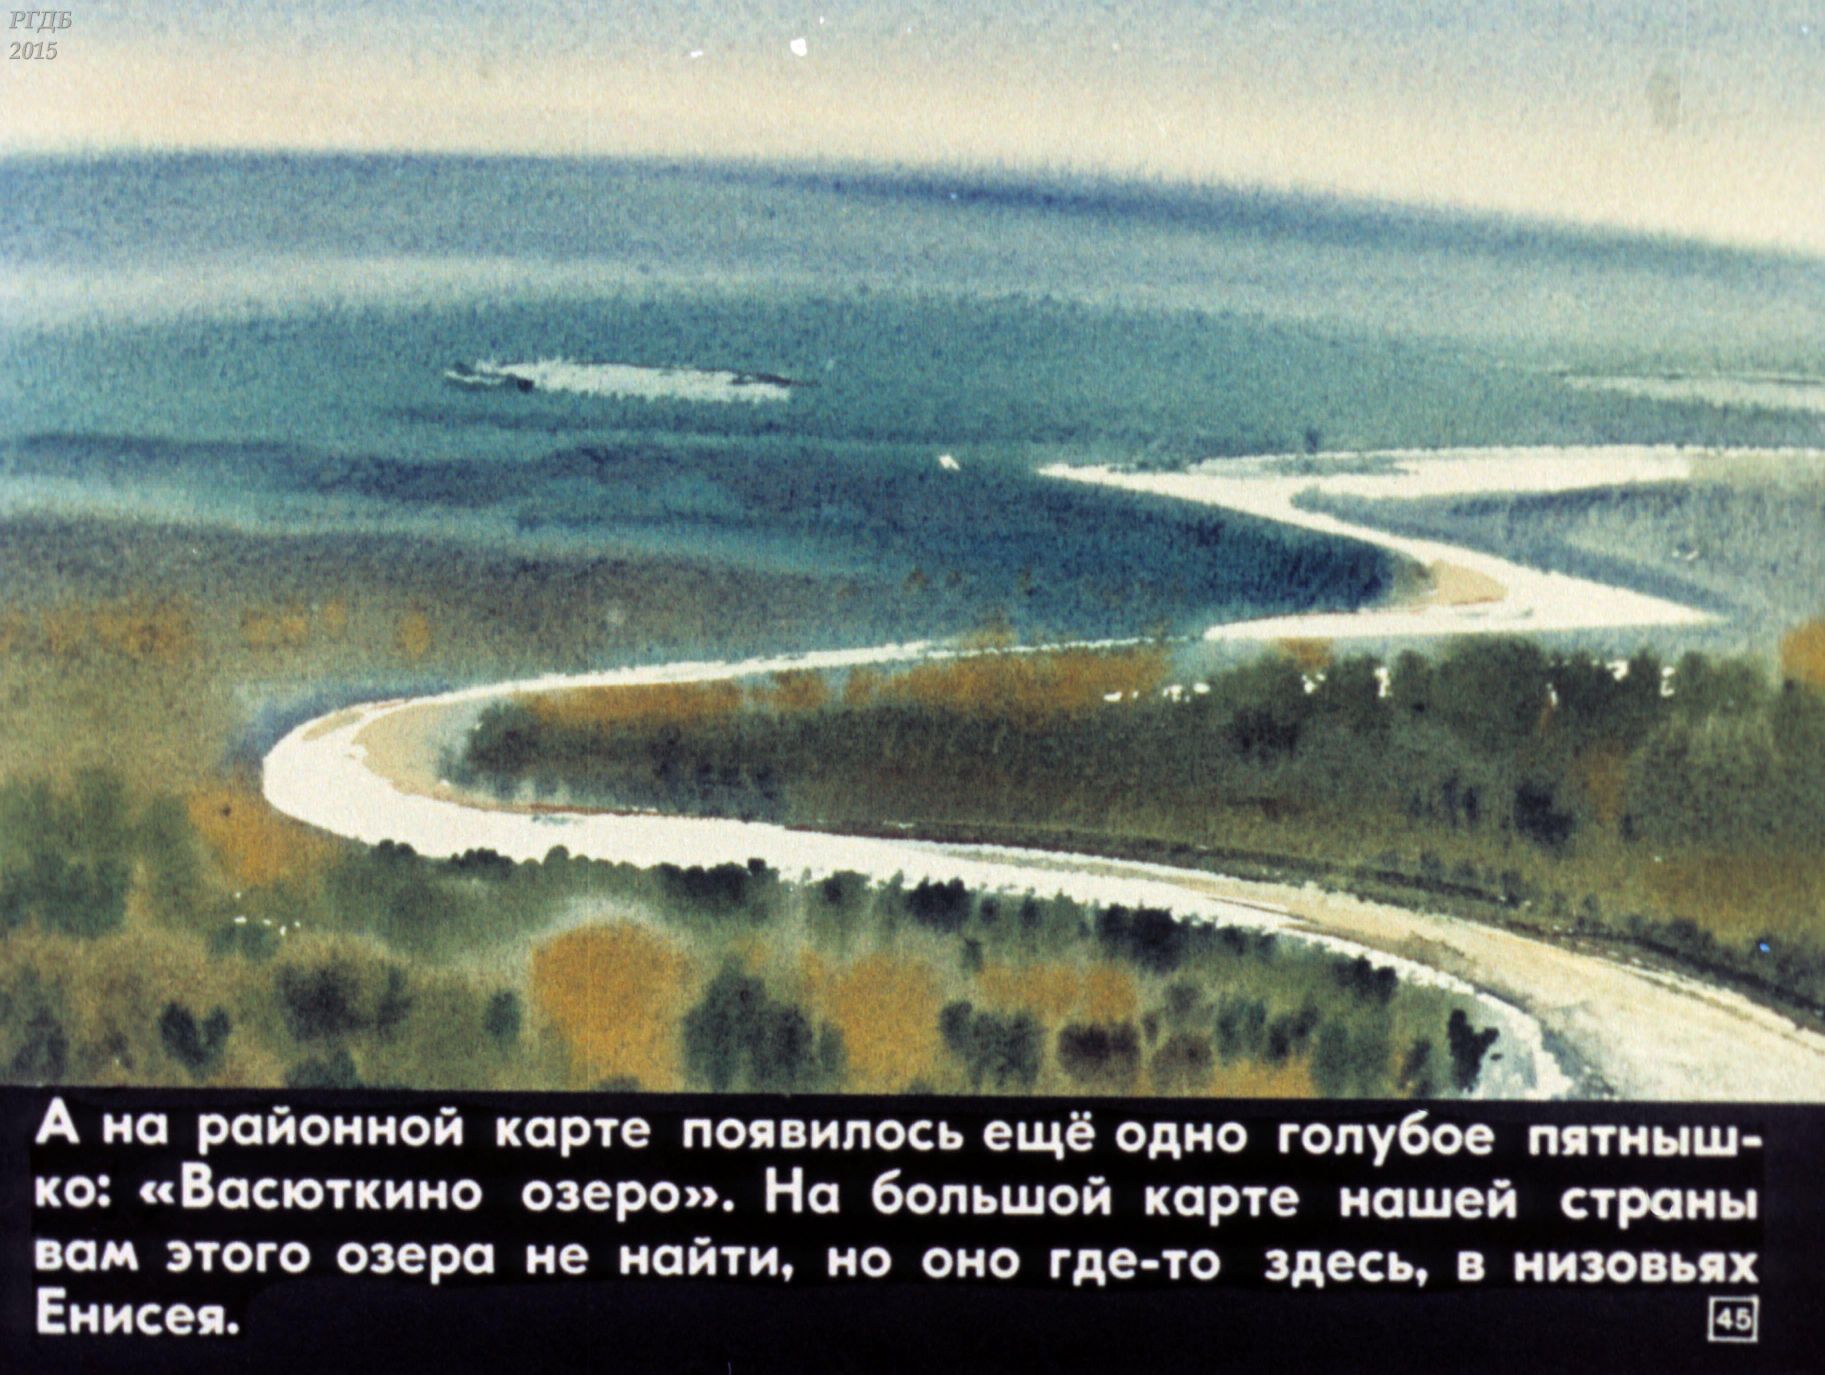 Первый эпизод васюткино озеро. Низовья Енисея Васюткино озеро. Васюткино озеро. Иллюстрация к рассказу Васюткино озеро. Рисунок к рассказу Васюткино озеро.